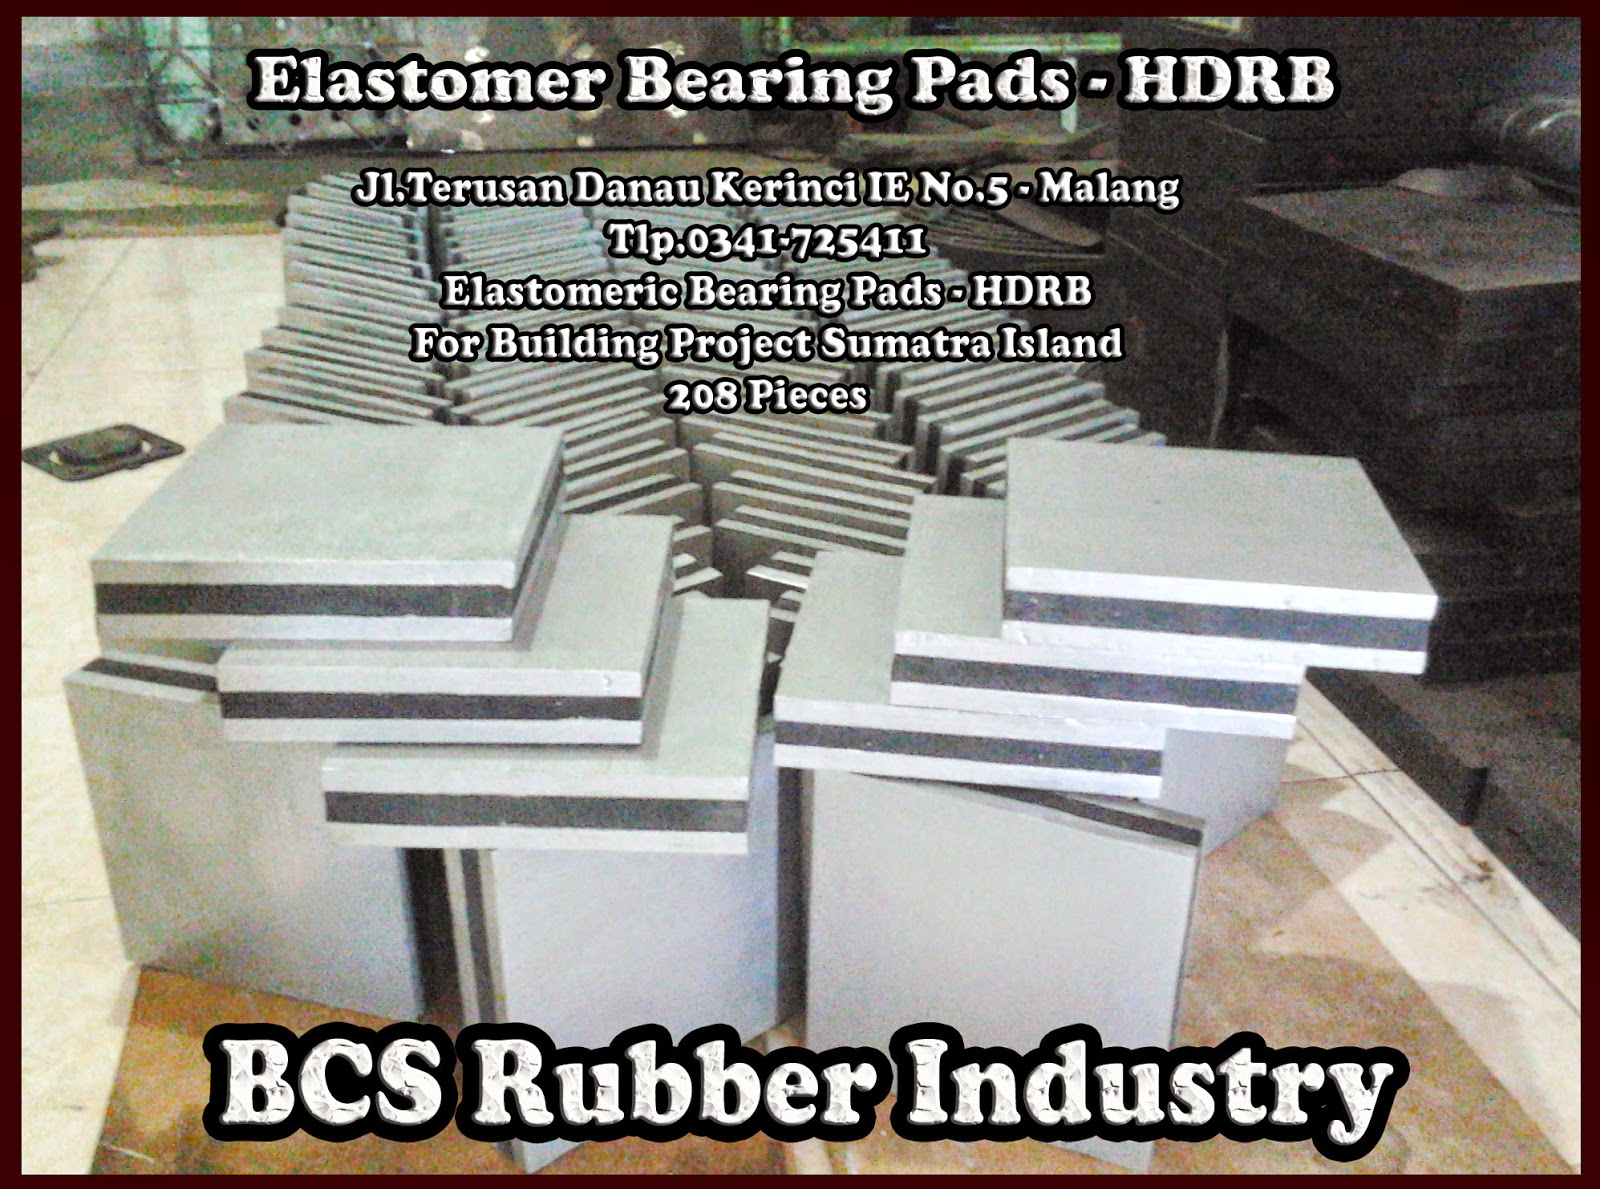 ""Elastomer Bearing Pads di Banjarmasin""Elastomer Bearing Pads di Batam'"Elastomer Bearing pads di Bandar lampung""Elastomer Bearing Pads di Bengkulu"'